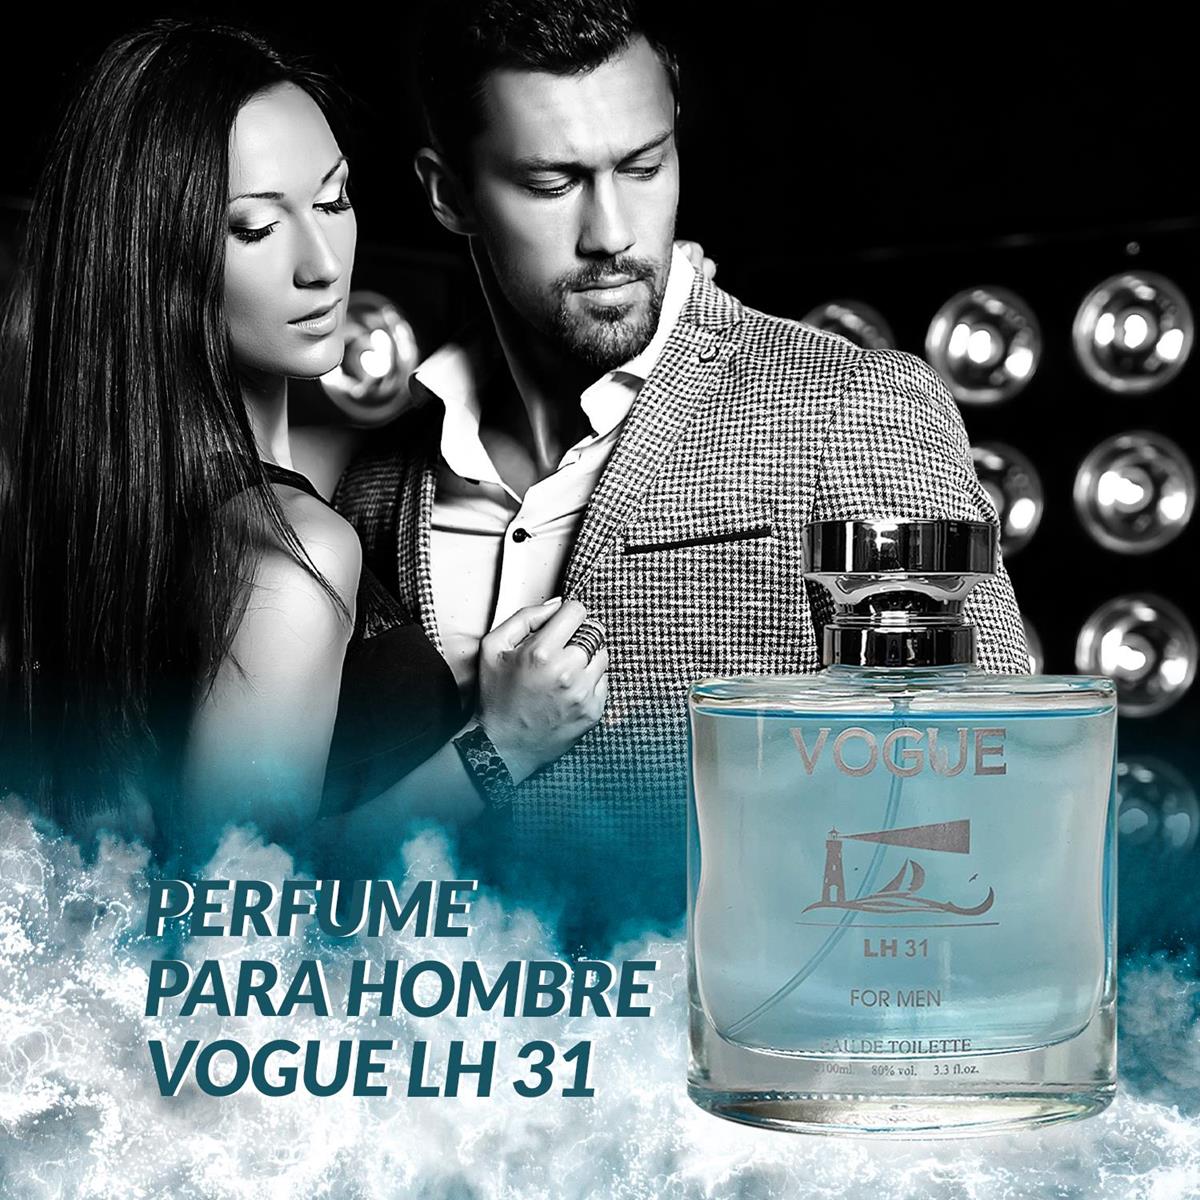 Perfume para hombre Vogue LH 31 100ml – Dubai essences